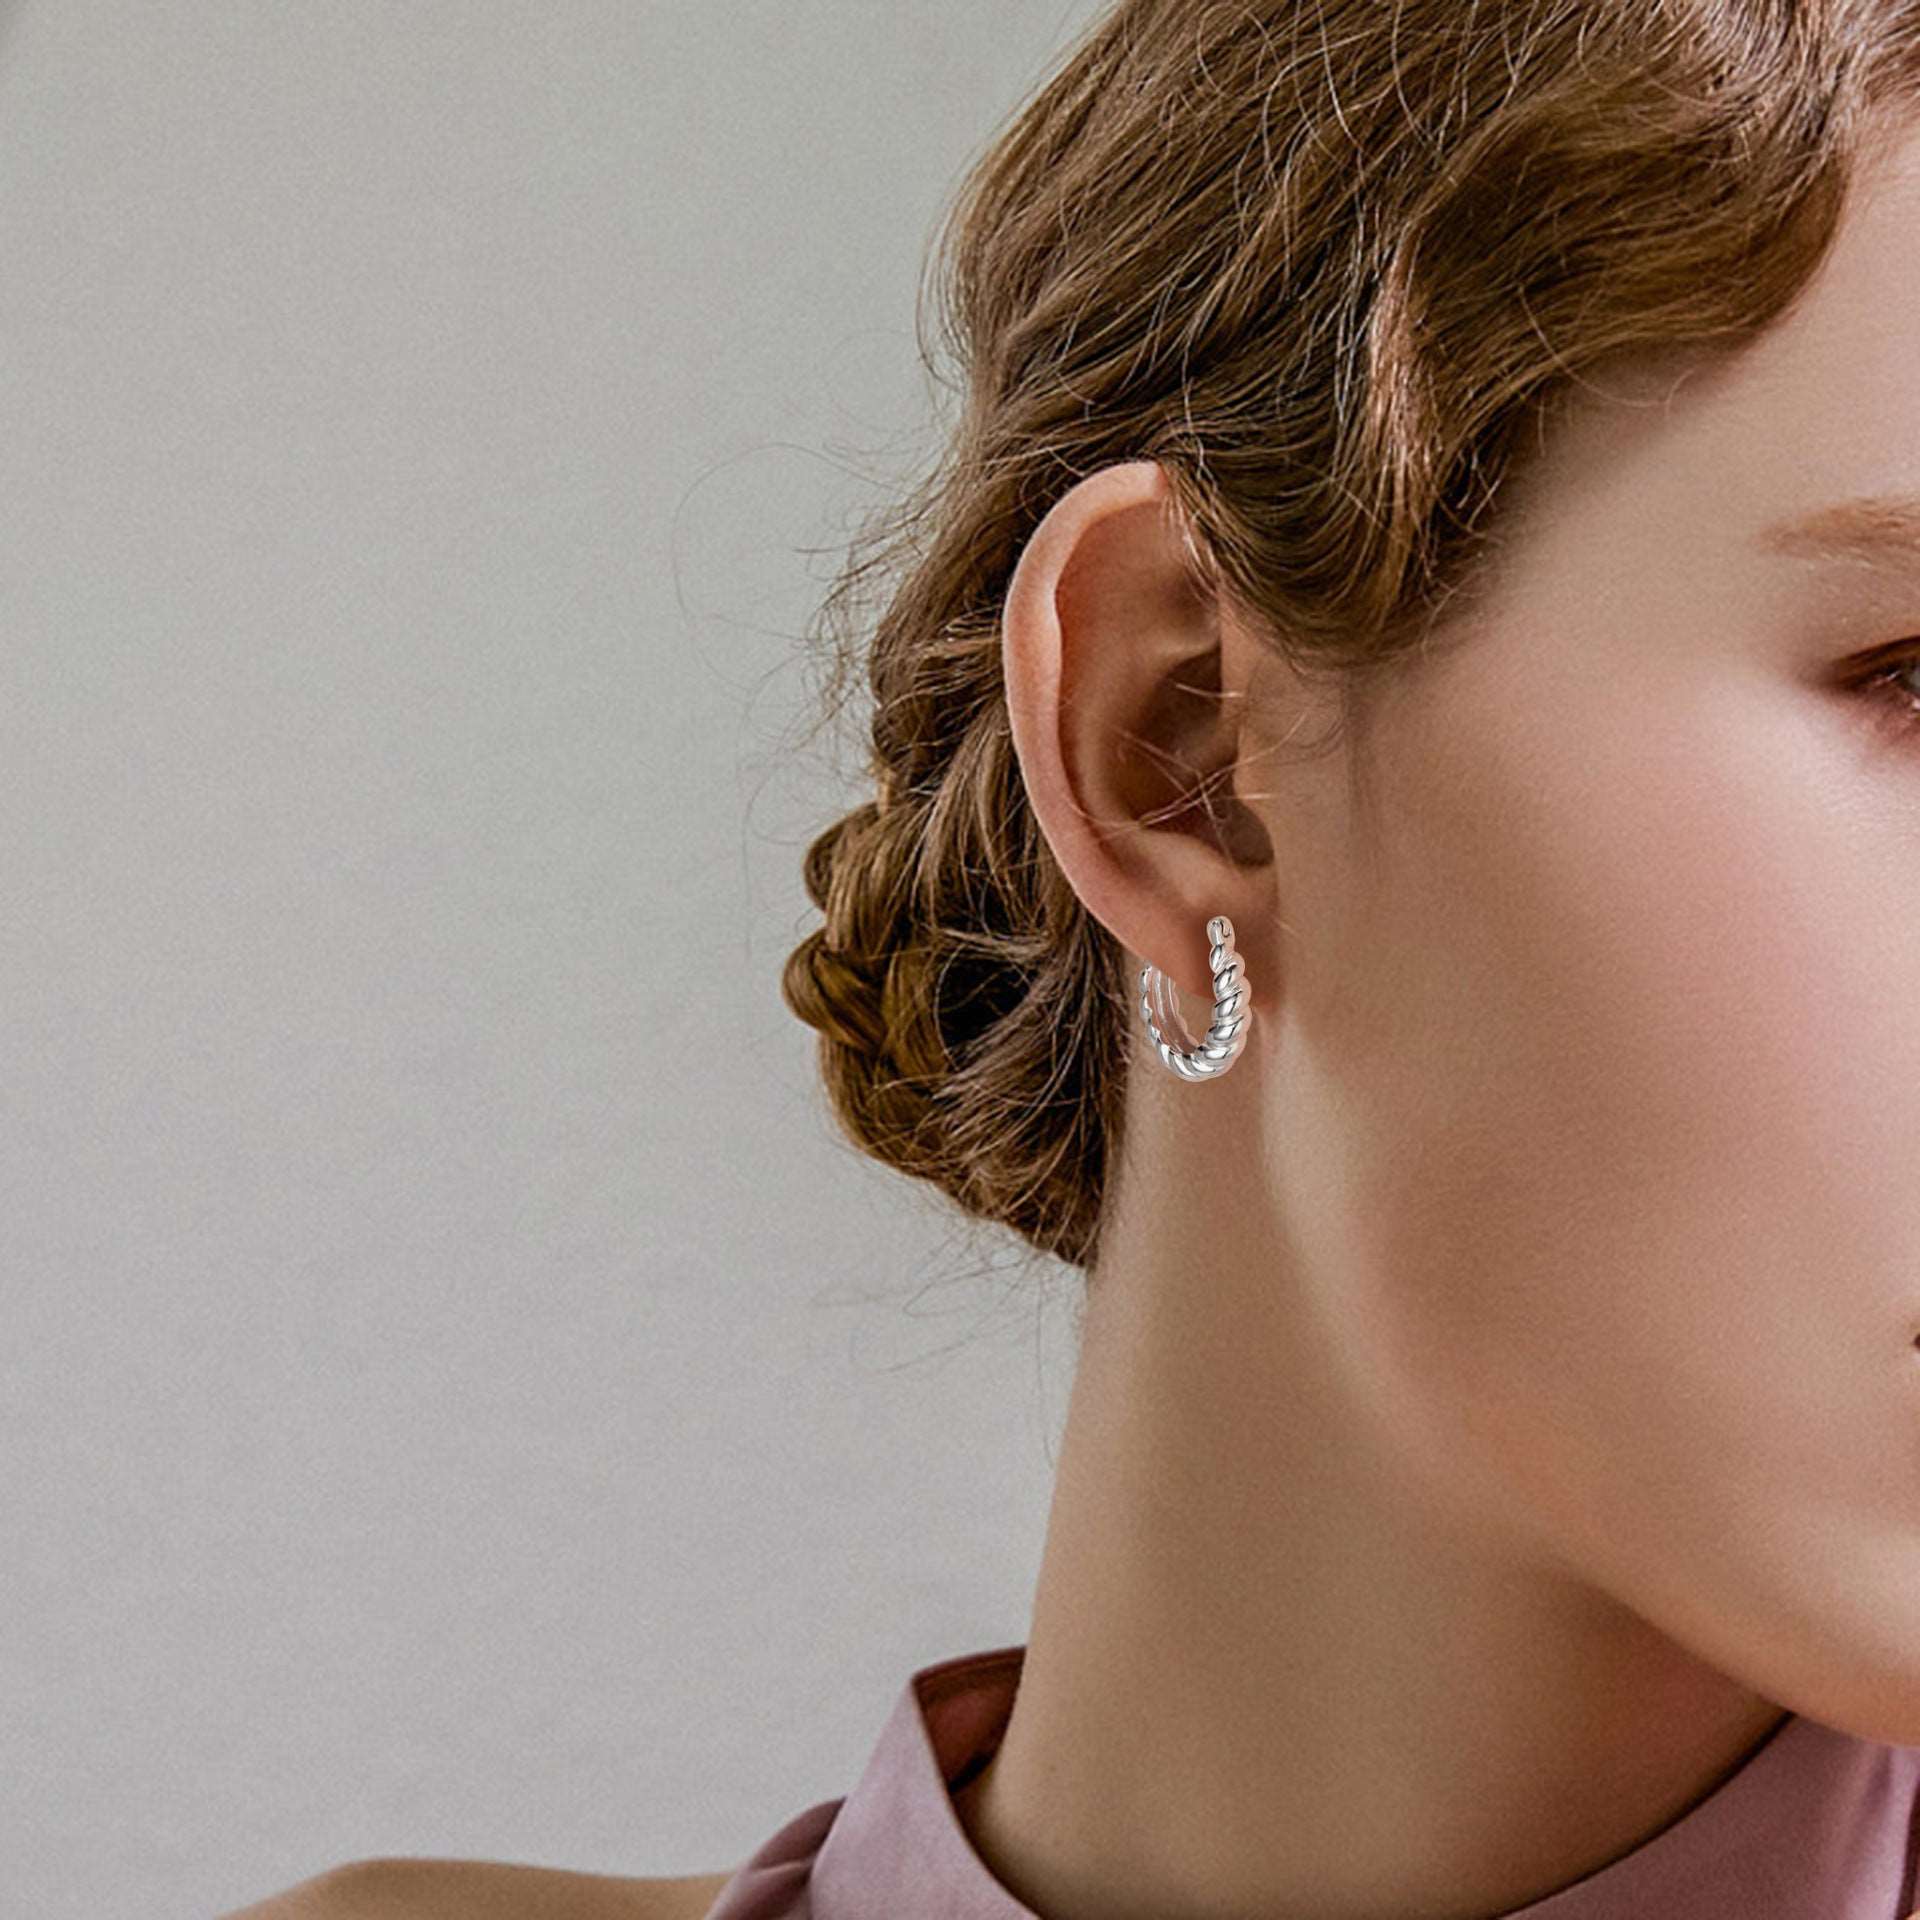 Women's Sterling Silver Twist Earrings